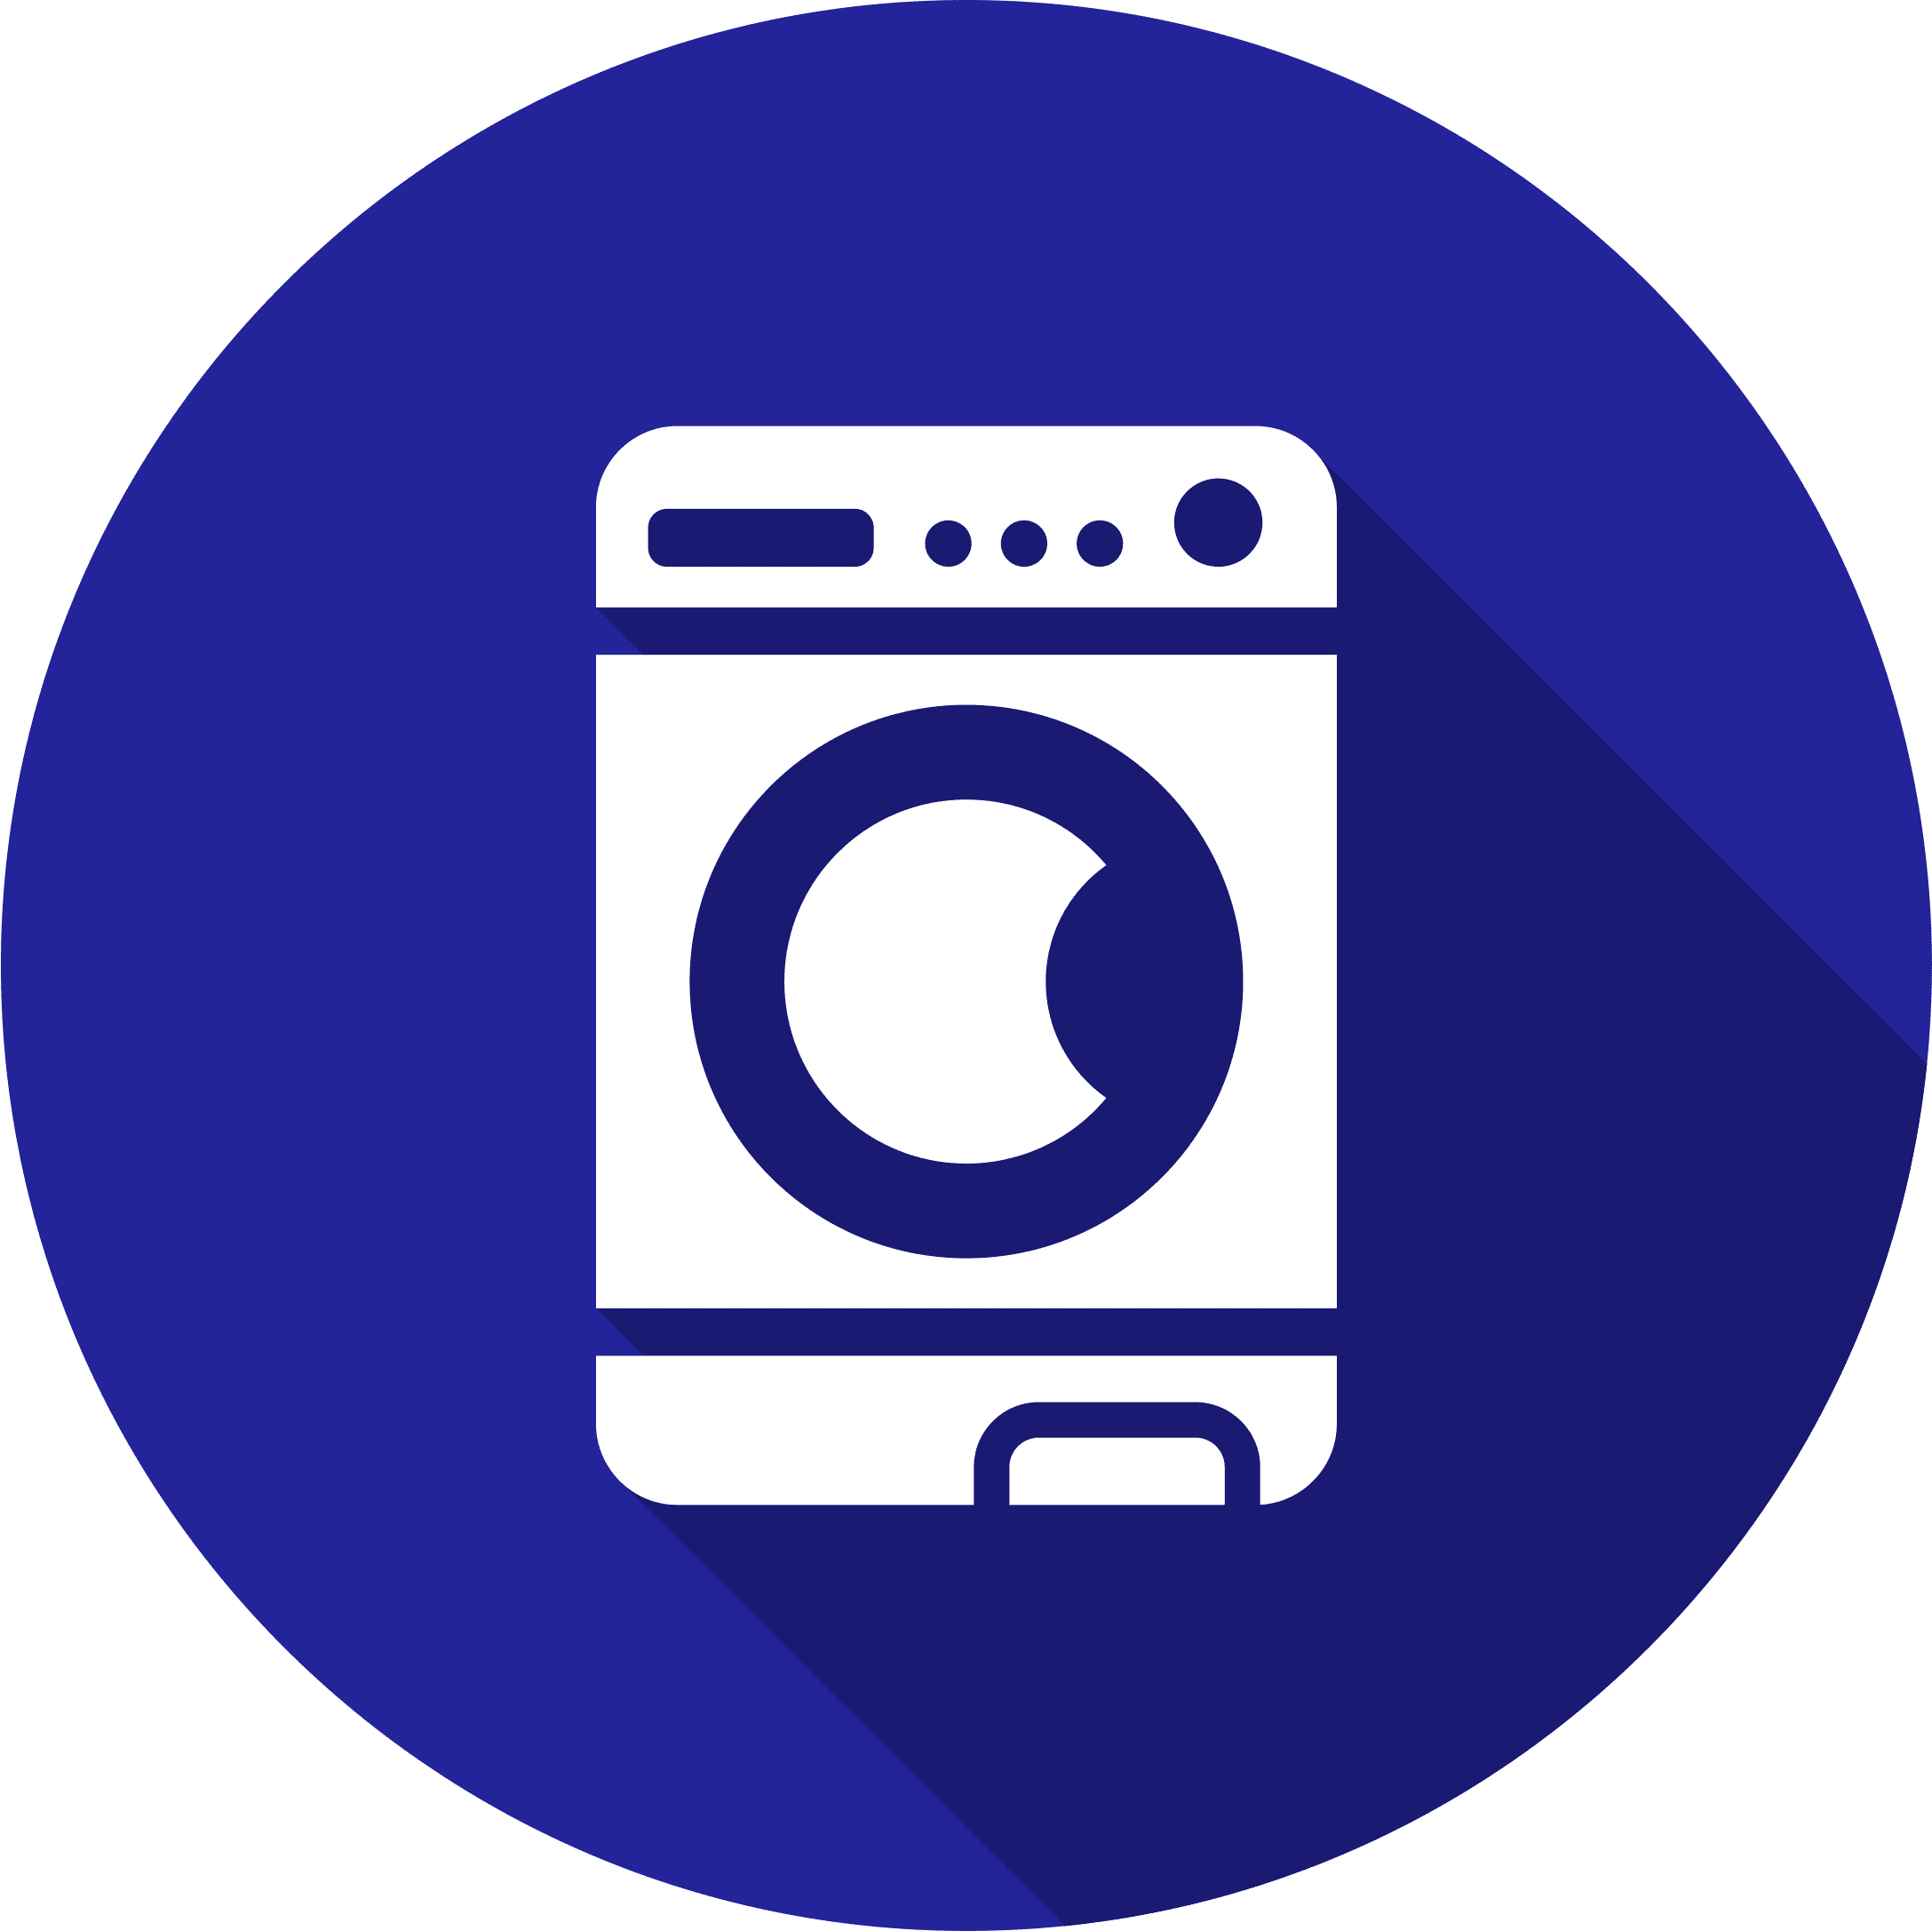 Washing Machines - Gloucester Road Tube Station (2175x2174)